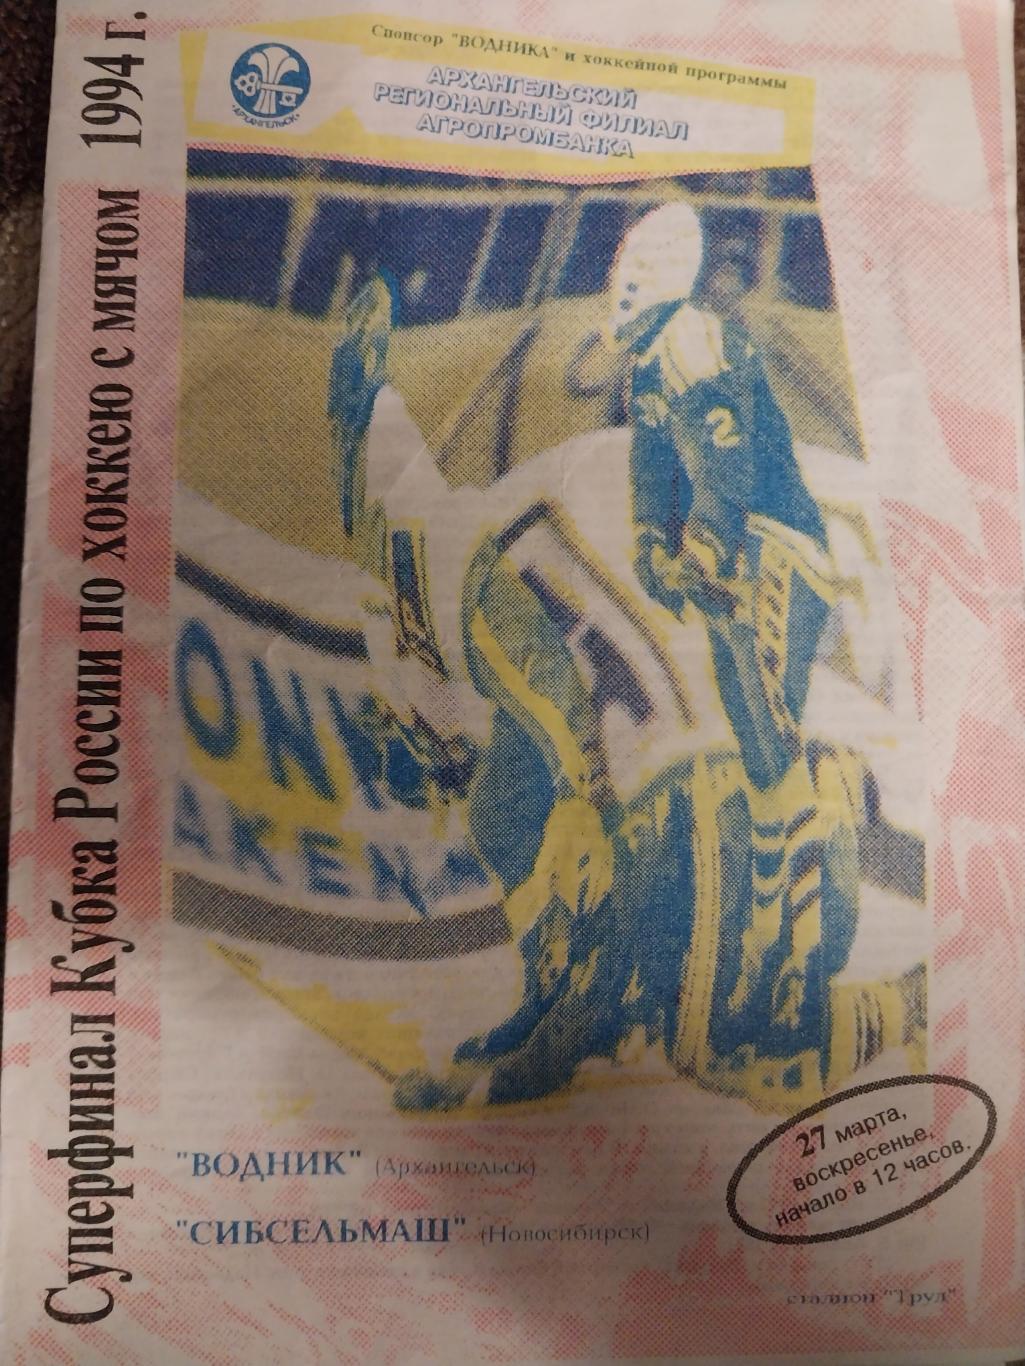 Водник (Архангельск) - Сибсельмаш (Новосибирск) Суперфинал Кубка РФ 27.03.1994